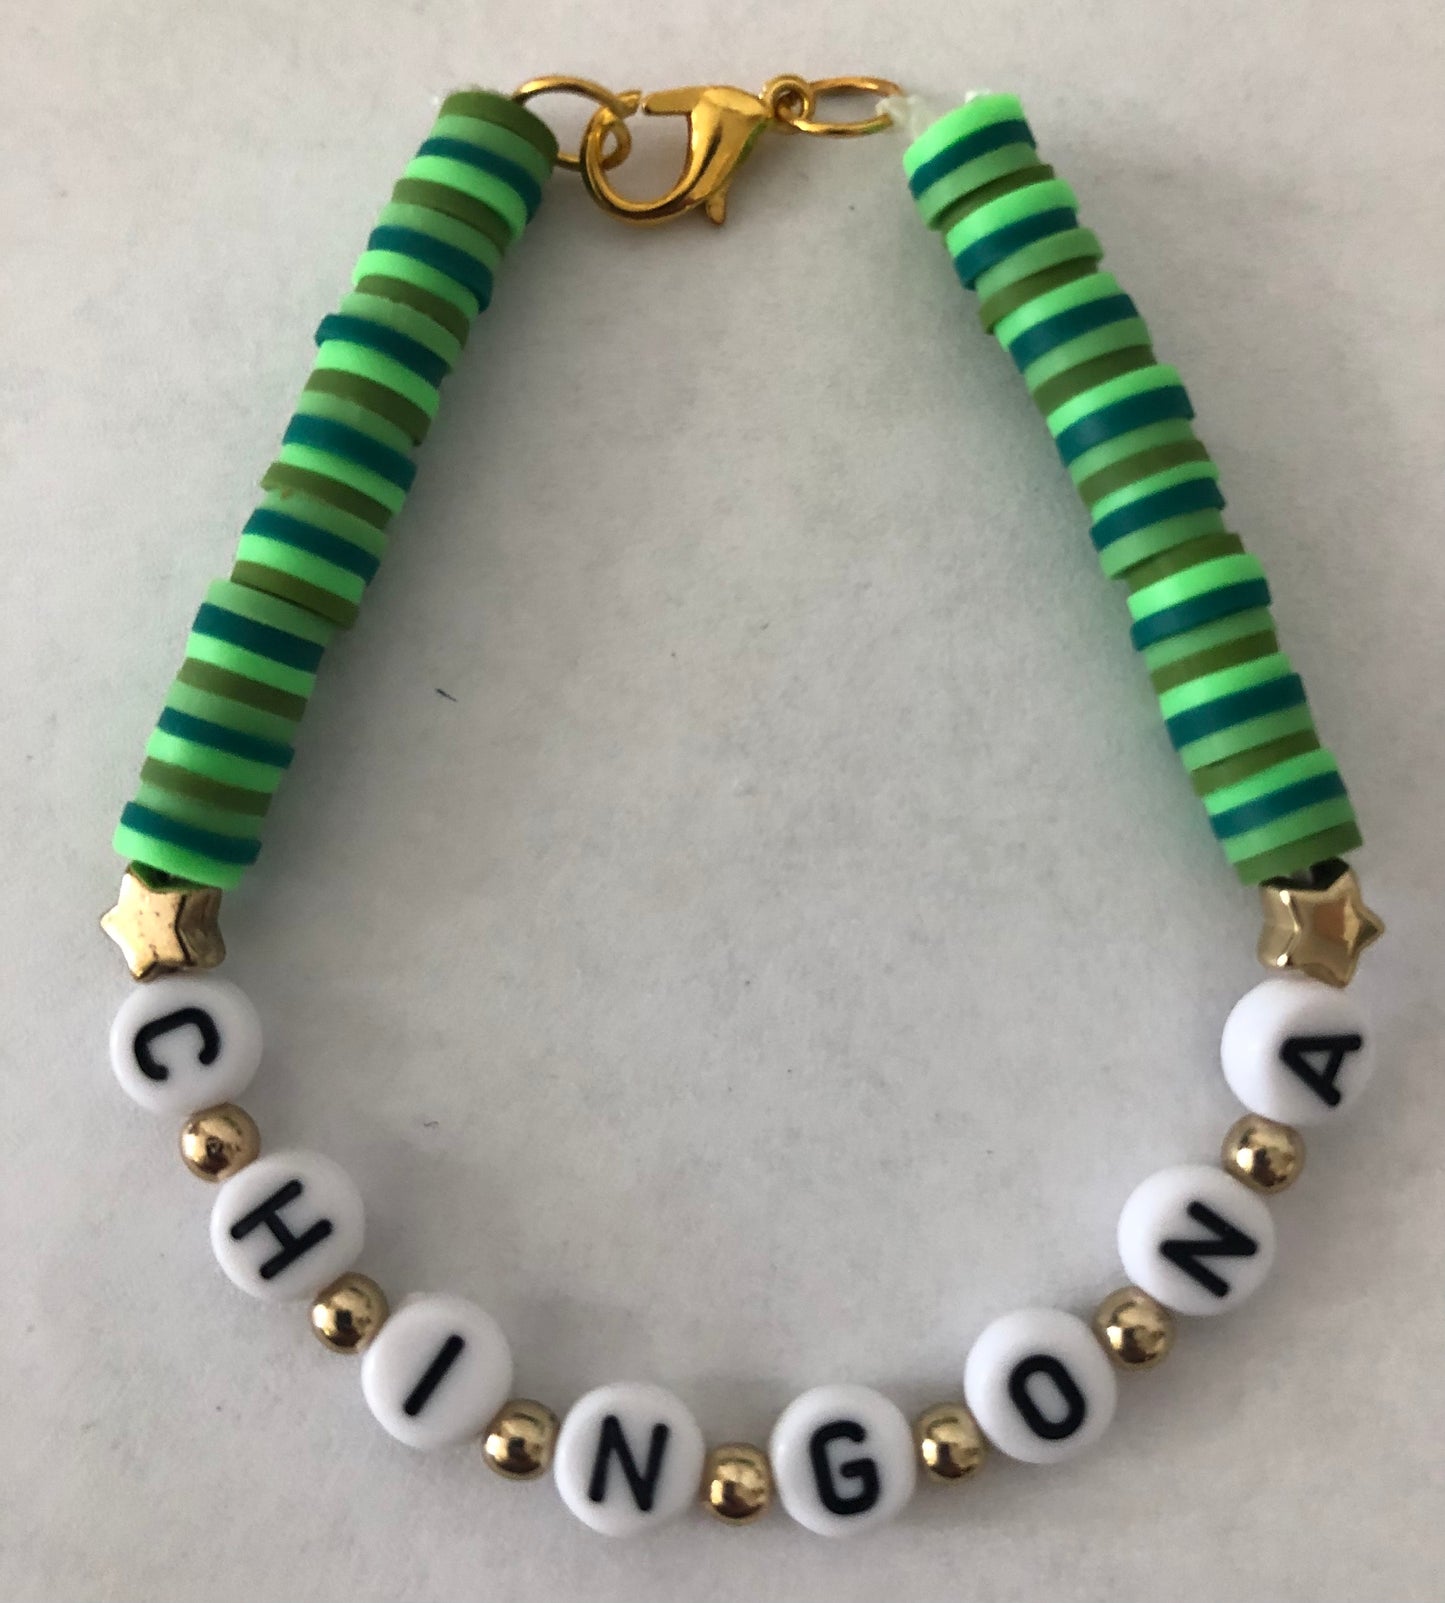 CHINGONA bracelet